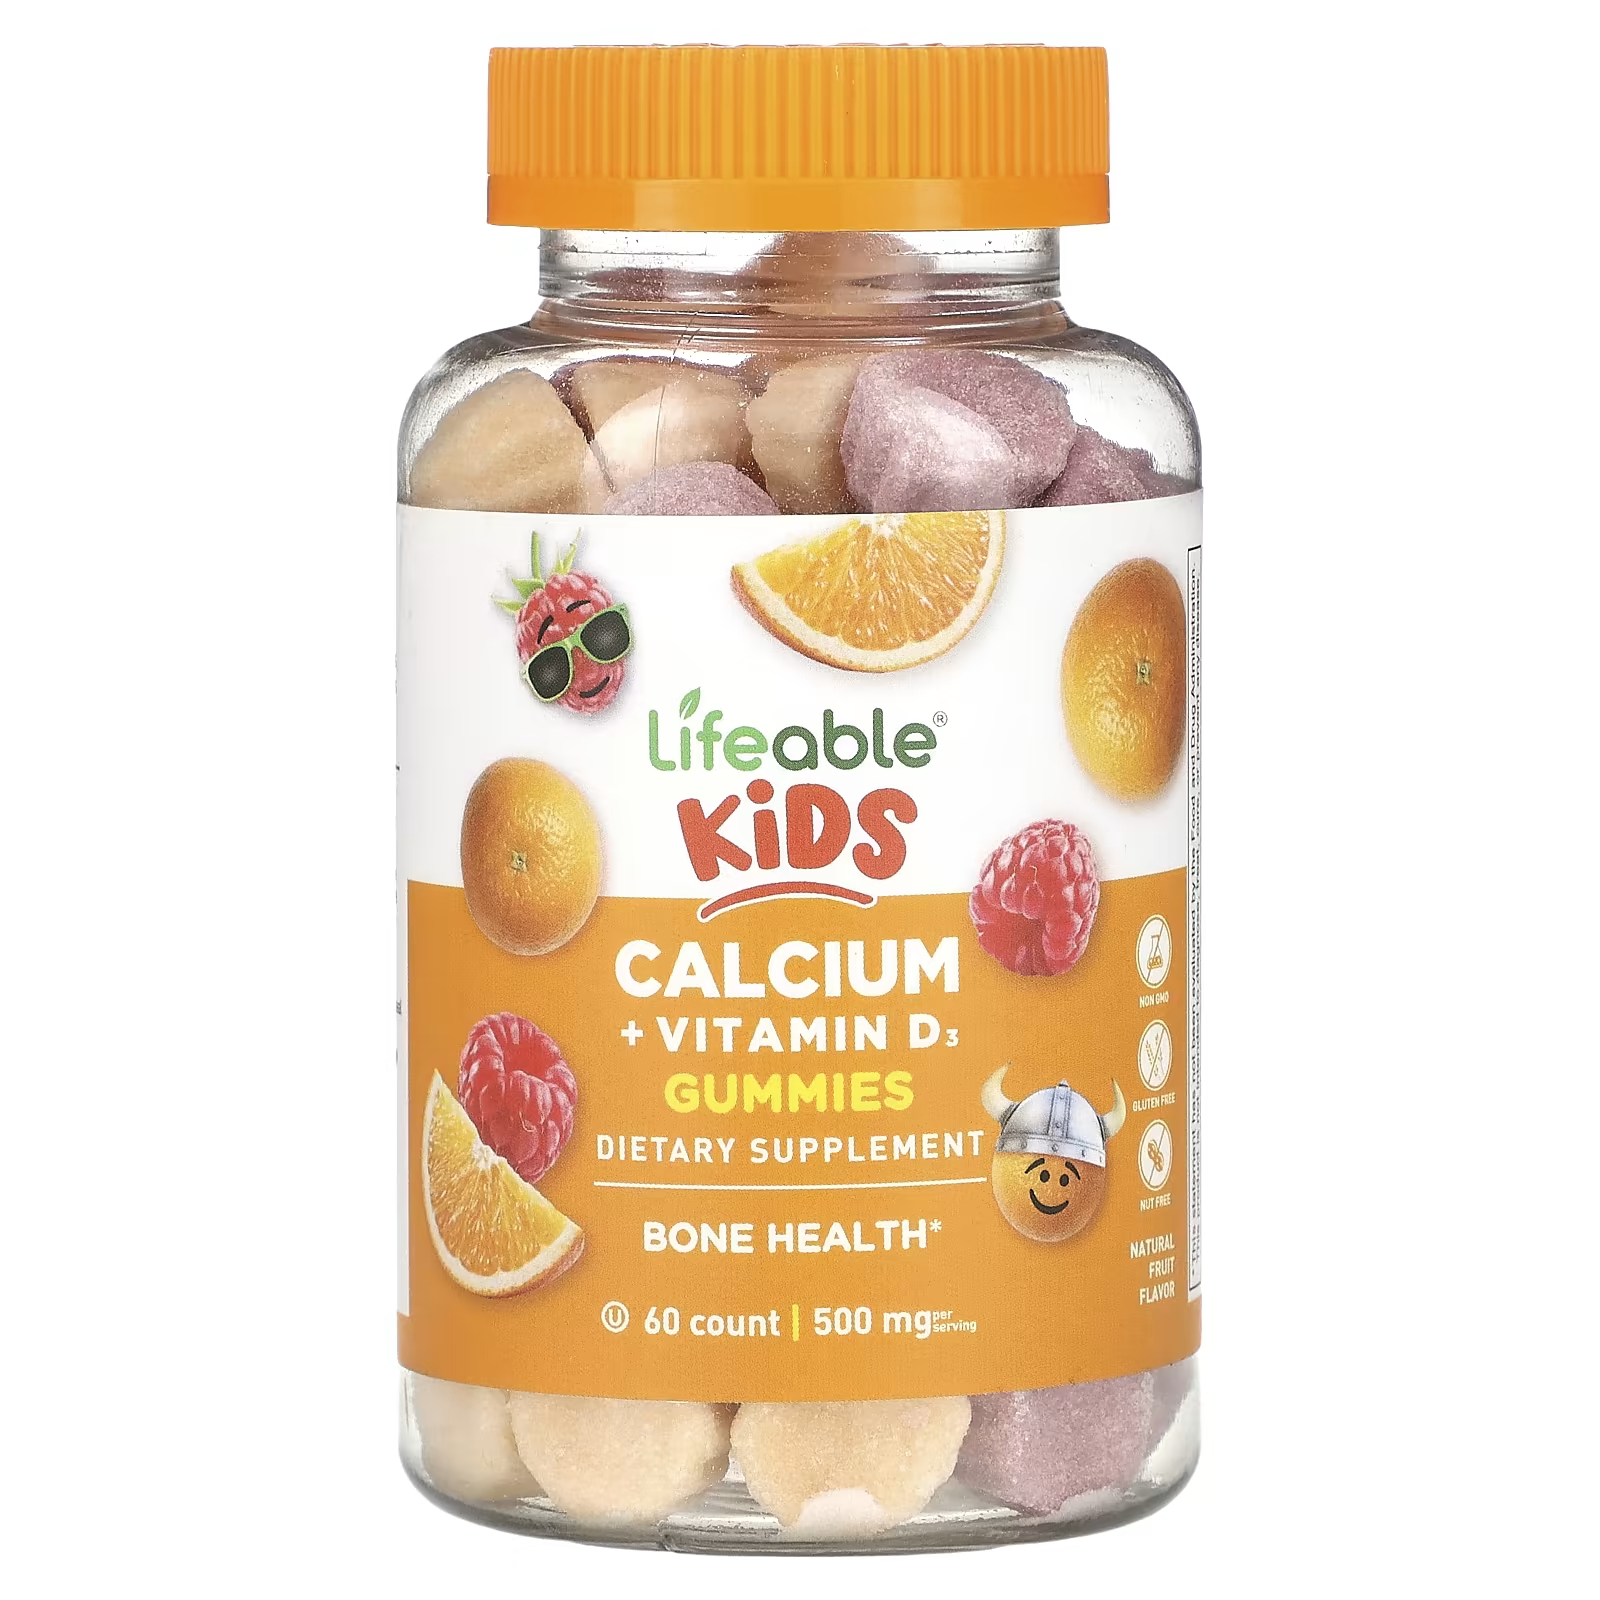 Пищевая добавка Lifeable Kids с кальцием и витамином D3, натуральные фрукты, 60 жевательных конфет цена и фото